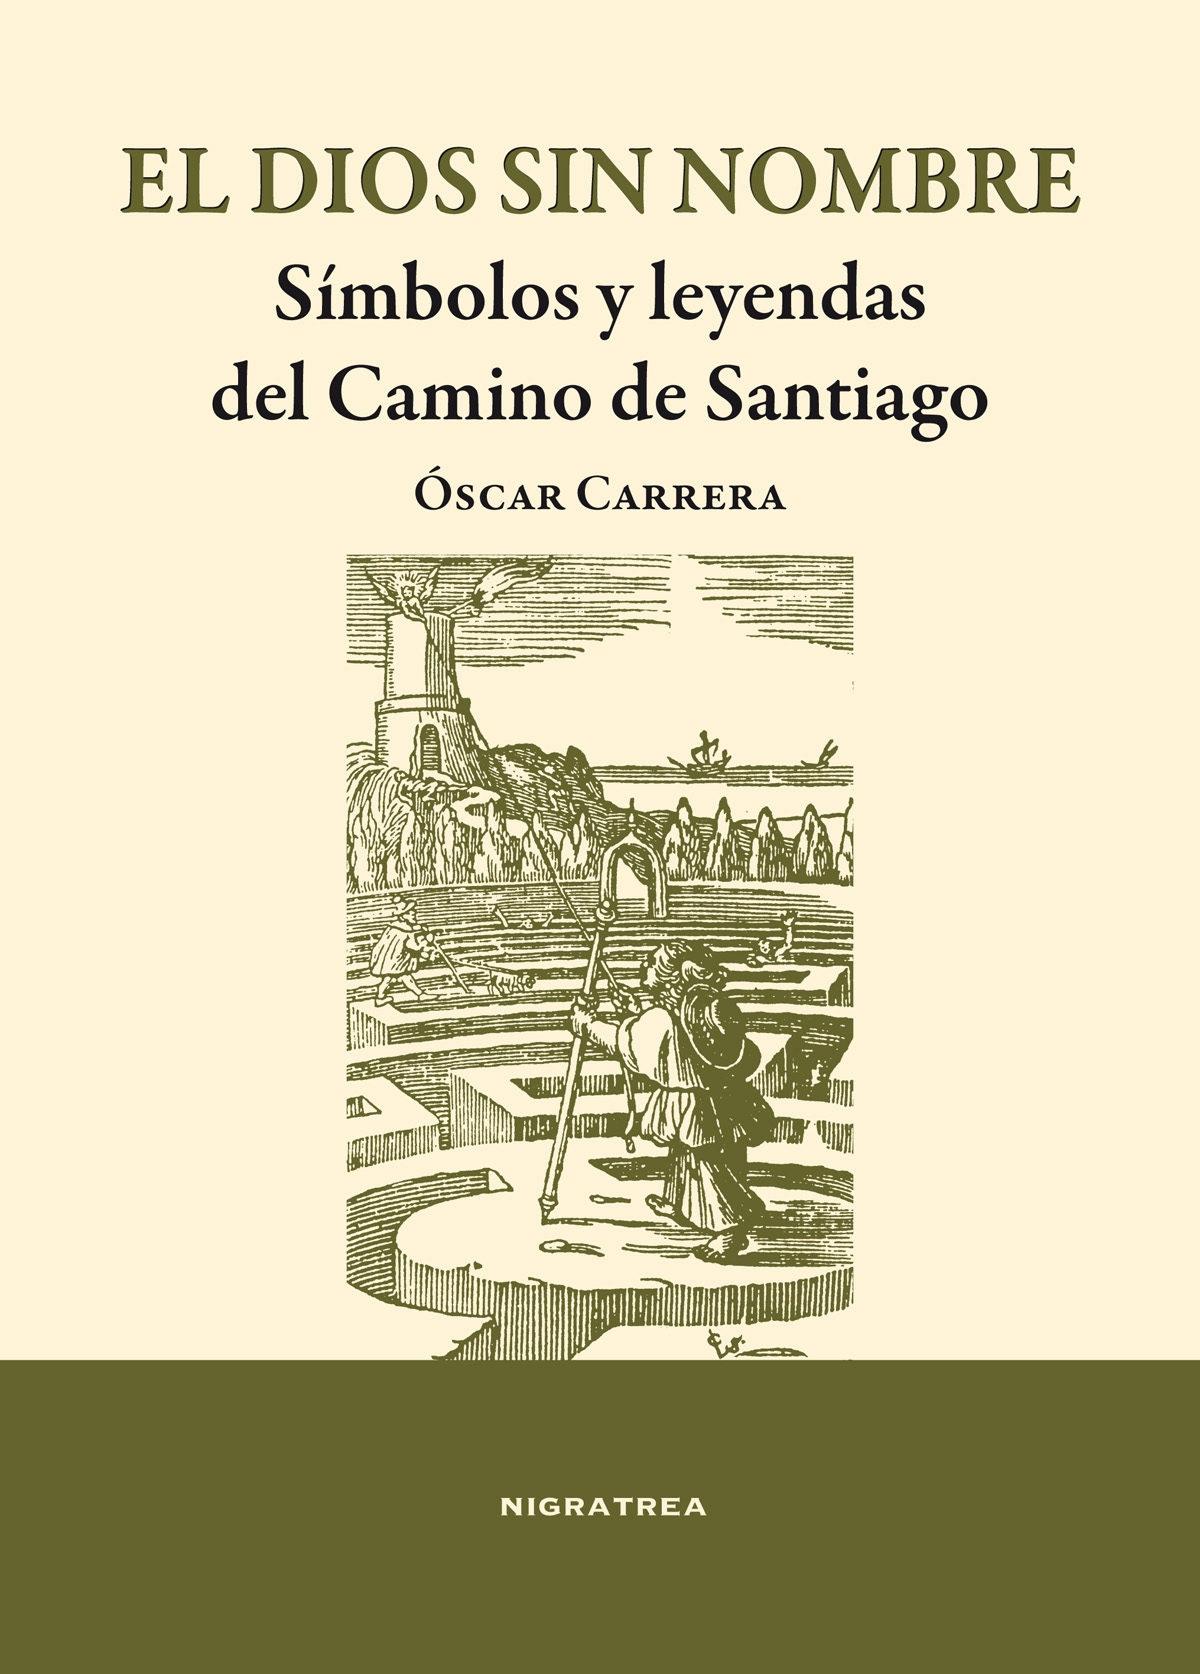 El dios sin nombre. Símbolos y leyendas del Camino de Santiago. 